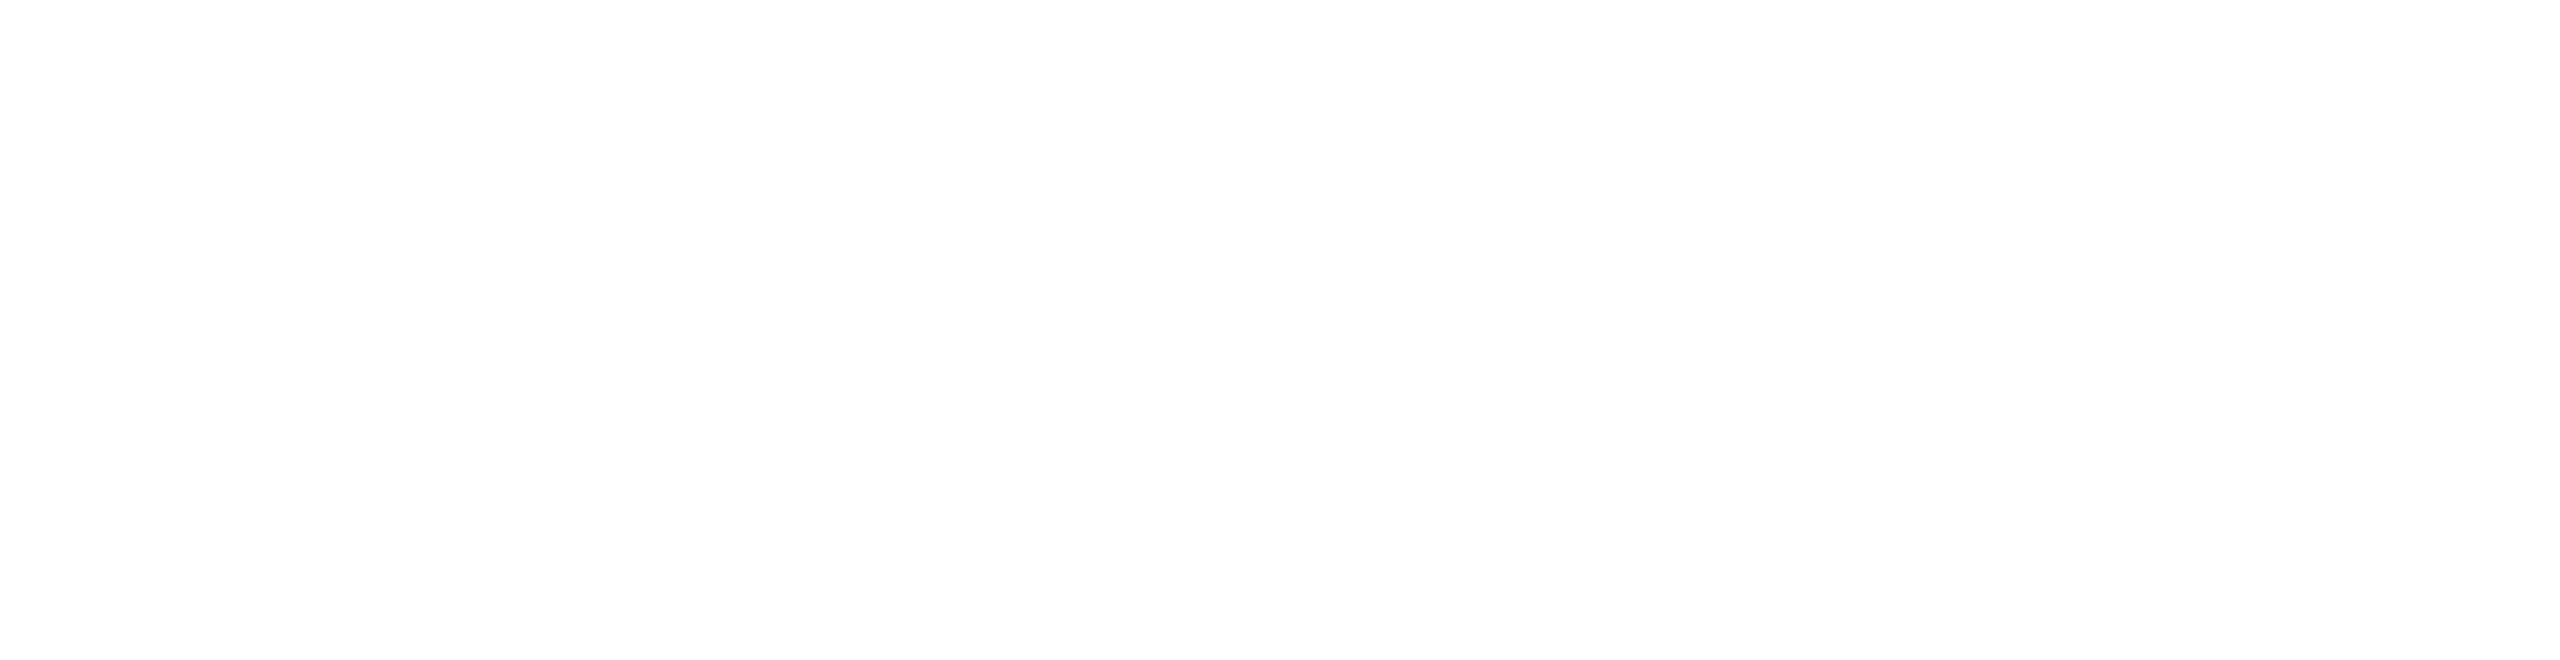 Amazon Ads Rgb White Large